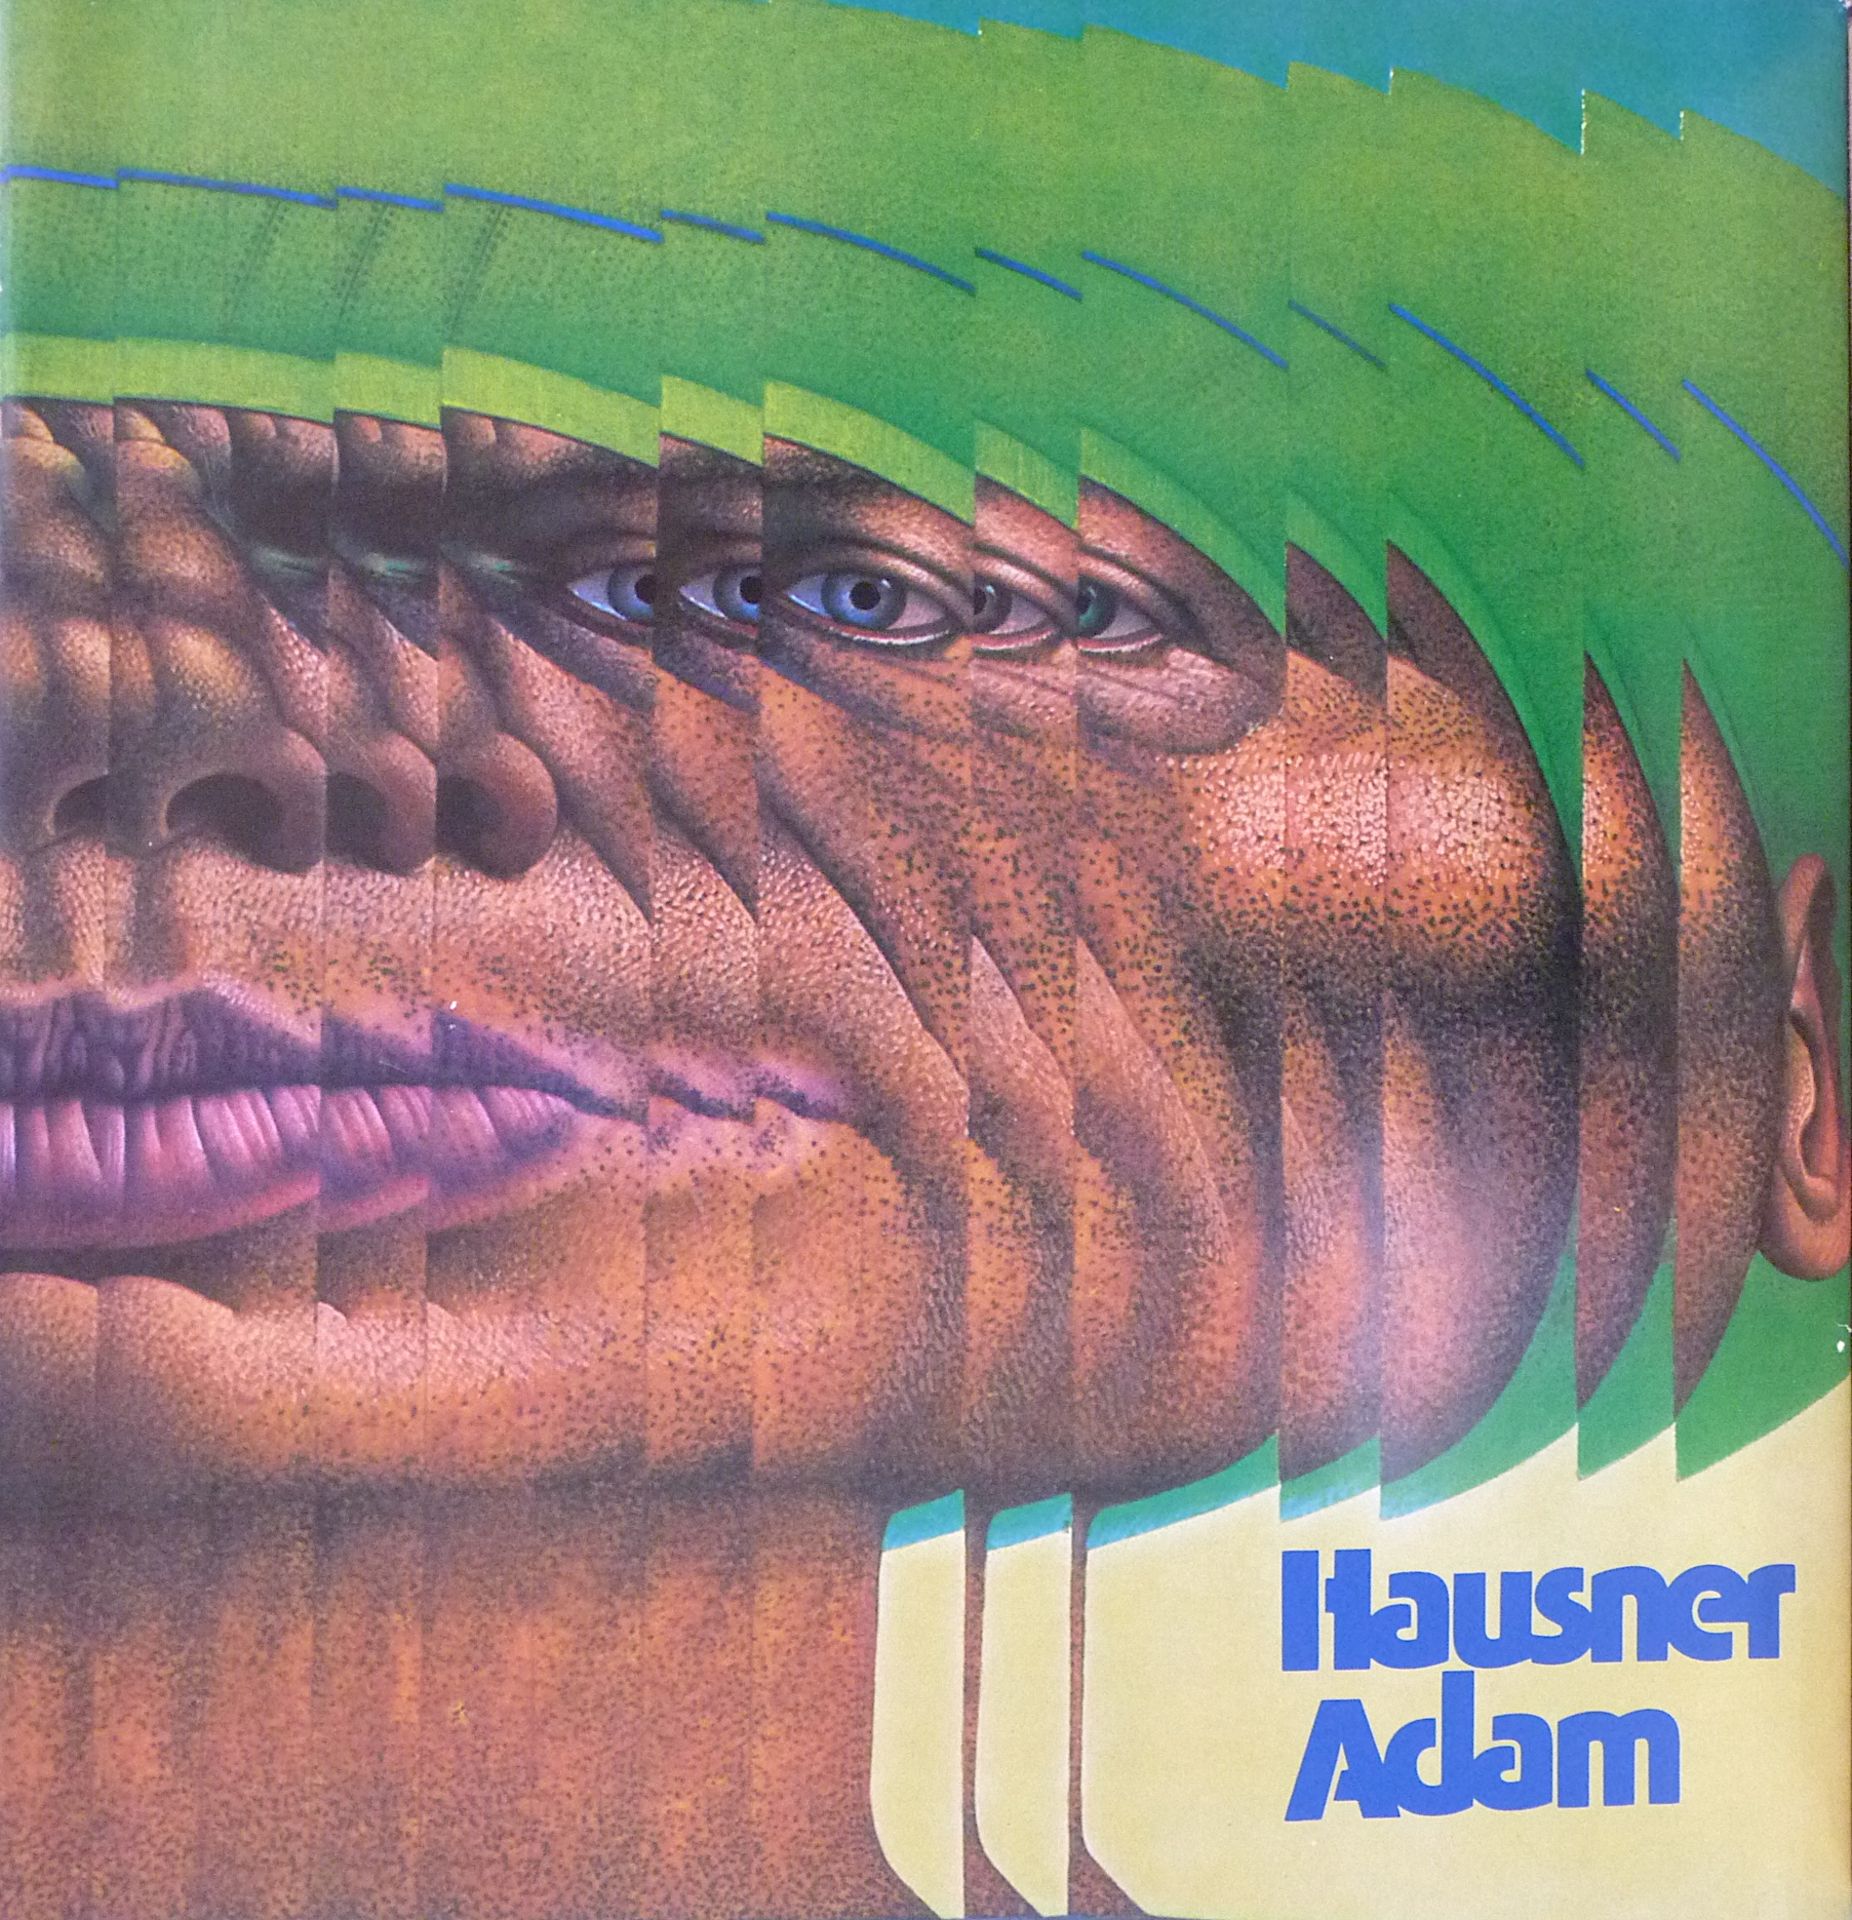 HAUSNER, RUDOLF: "Adam", 1974